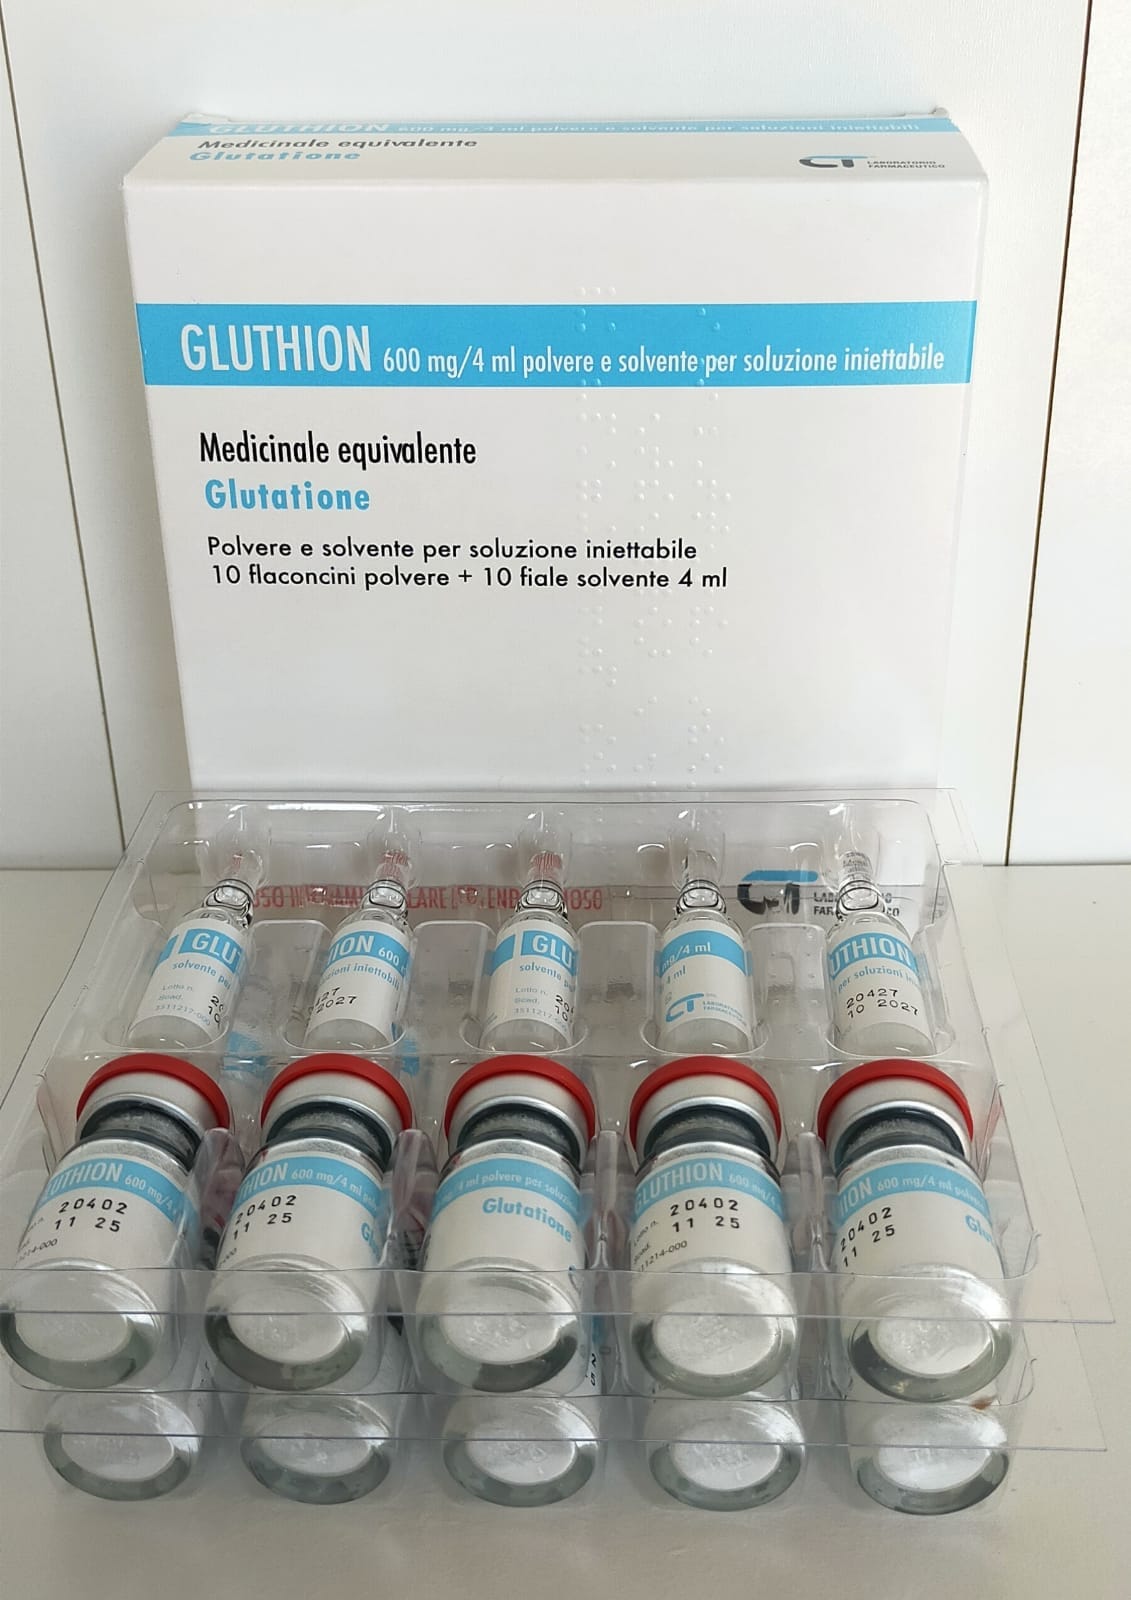 gluthione-glutathione-lushfills.com